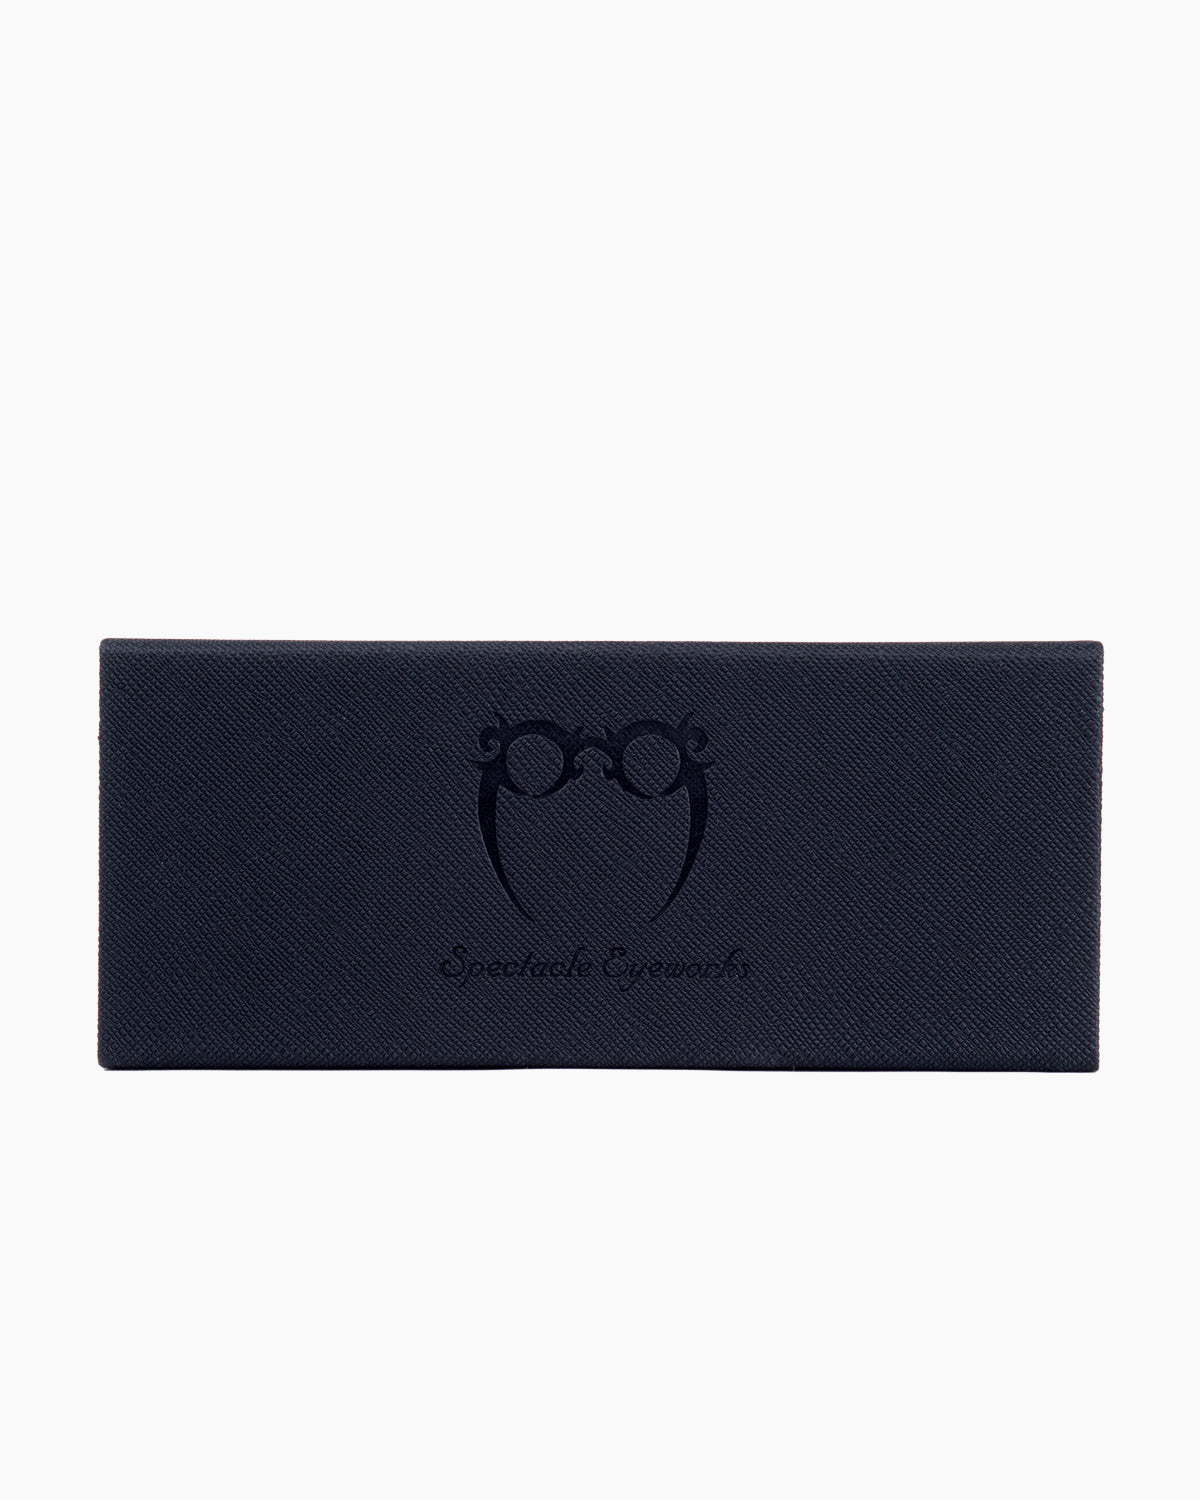 Spectacleeyeworks - persepolis - c33V2 | Bar à lunettes